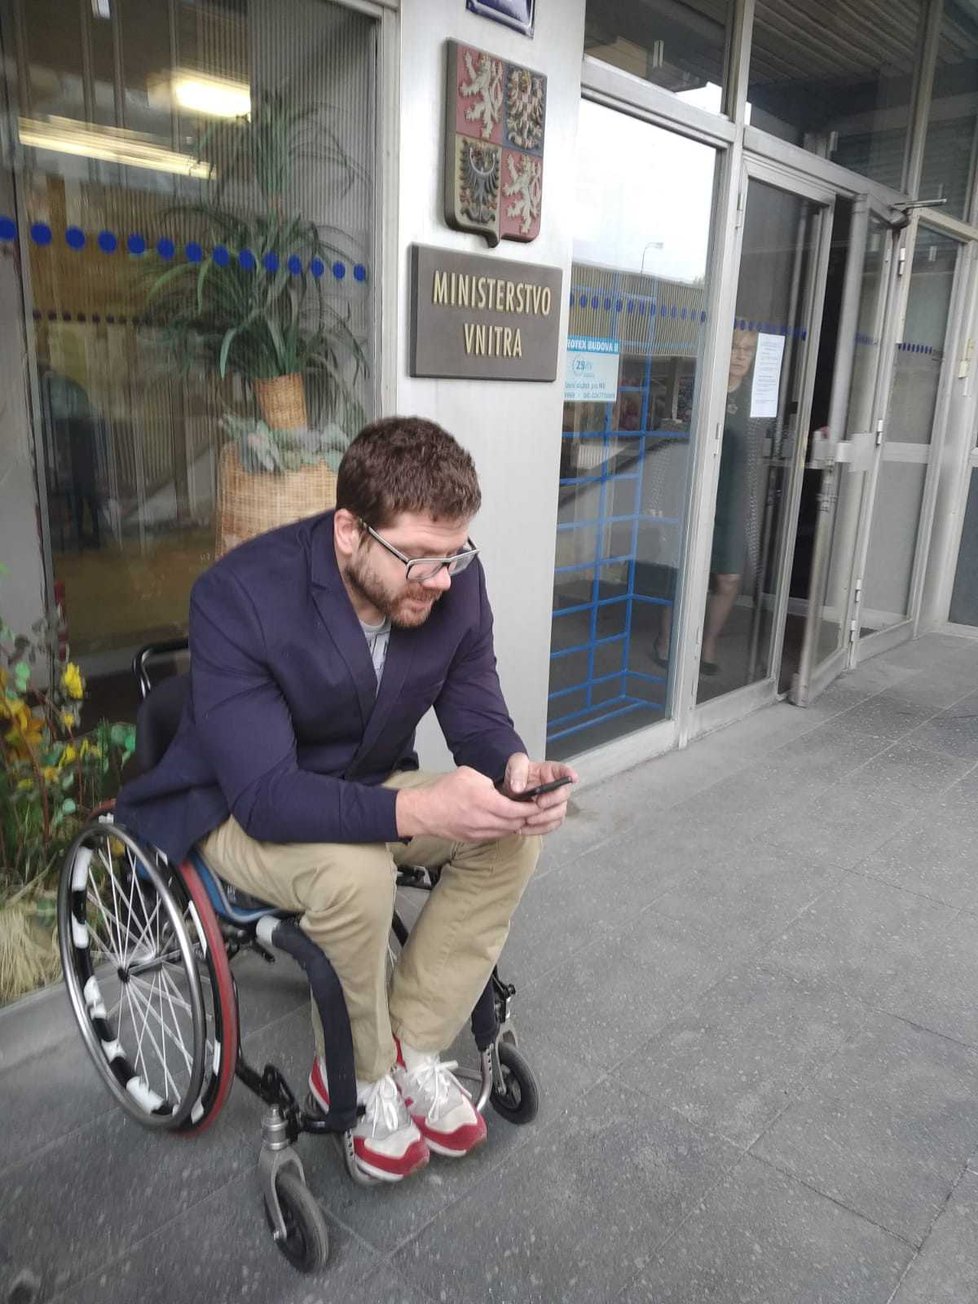 Paralympijský medailista v plavání a kandidát do europarlamentu Jan Povýšil (36) zažil pořádný šok. Pracovníci ministerstva vnitra ho odmítli vpustit do budovy na pražské Pankráci.